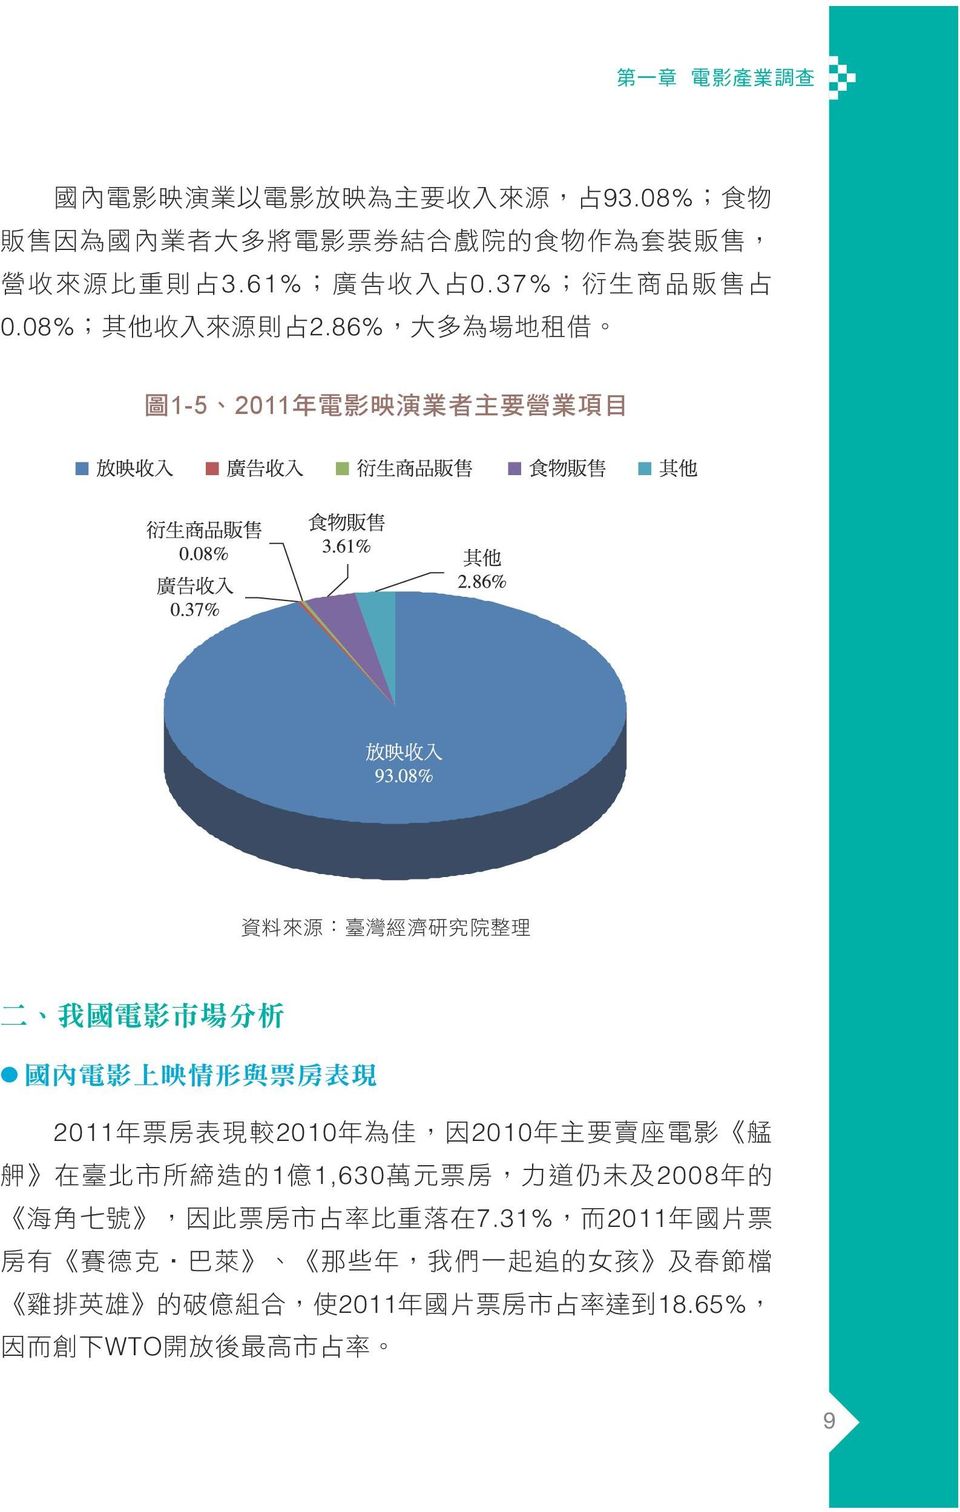 86%, 大 多 為 場 地 租 借 1-5 2011 資 料 來 源 : 臺 灣 經 濟 研 究 院 整 理 2011 年 票 房 表 現 較 2010 年 為 佳, 因 2010 年 主 要 賣 座 電 影 艋 舺 在 臺 北 市 所 締 造 的 1 億